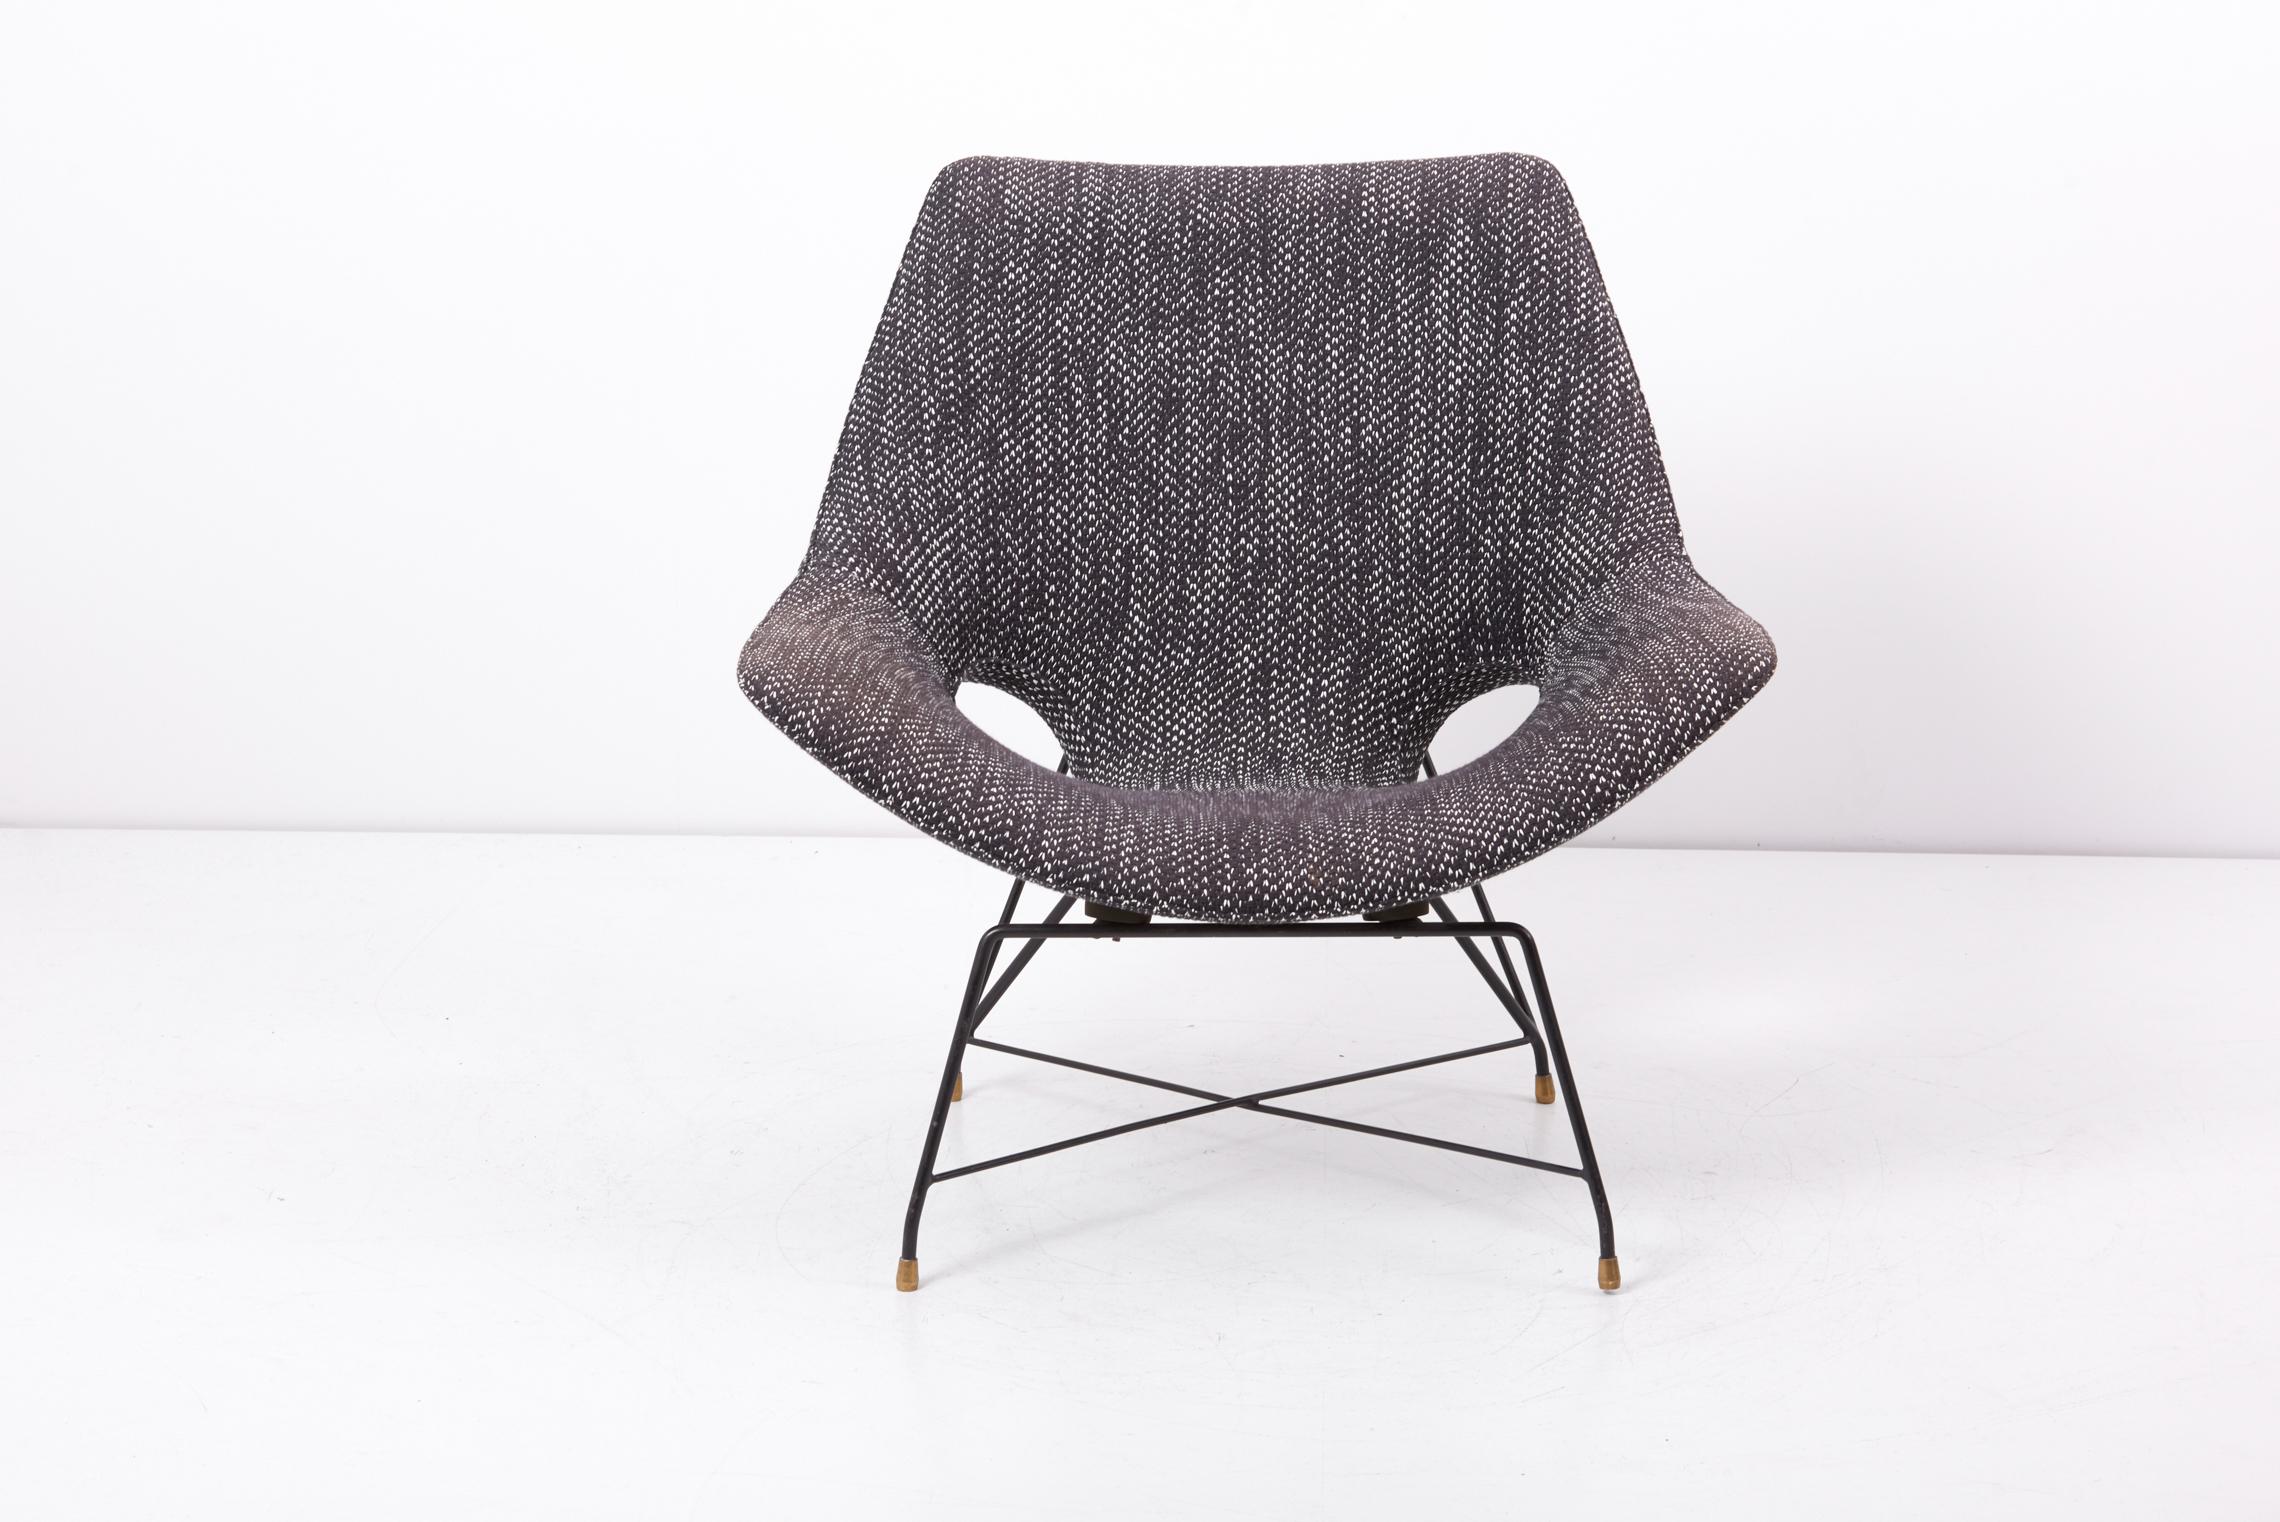 Chaise longue, conçue dans les années 1950 par Augusto Bozzi et fabriquée par Saporiti en Italie.
Structure en métal avec des extrémités en laiton, tissu en laine en noir et blanc.